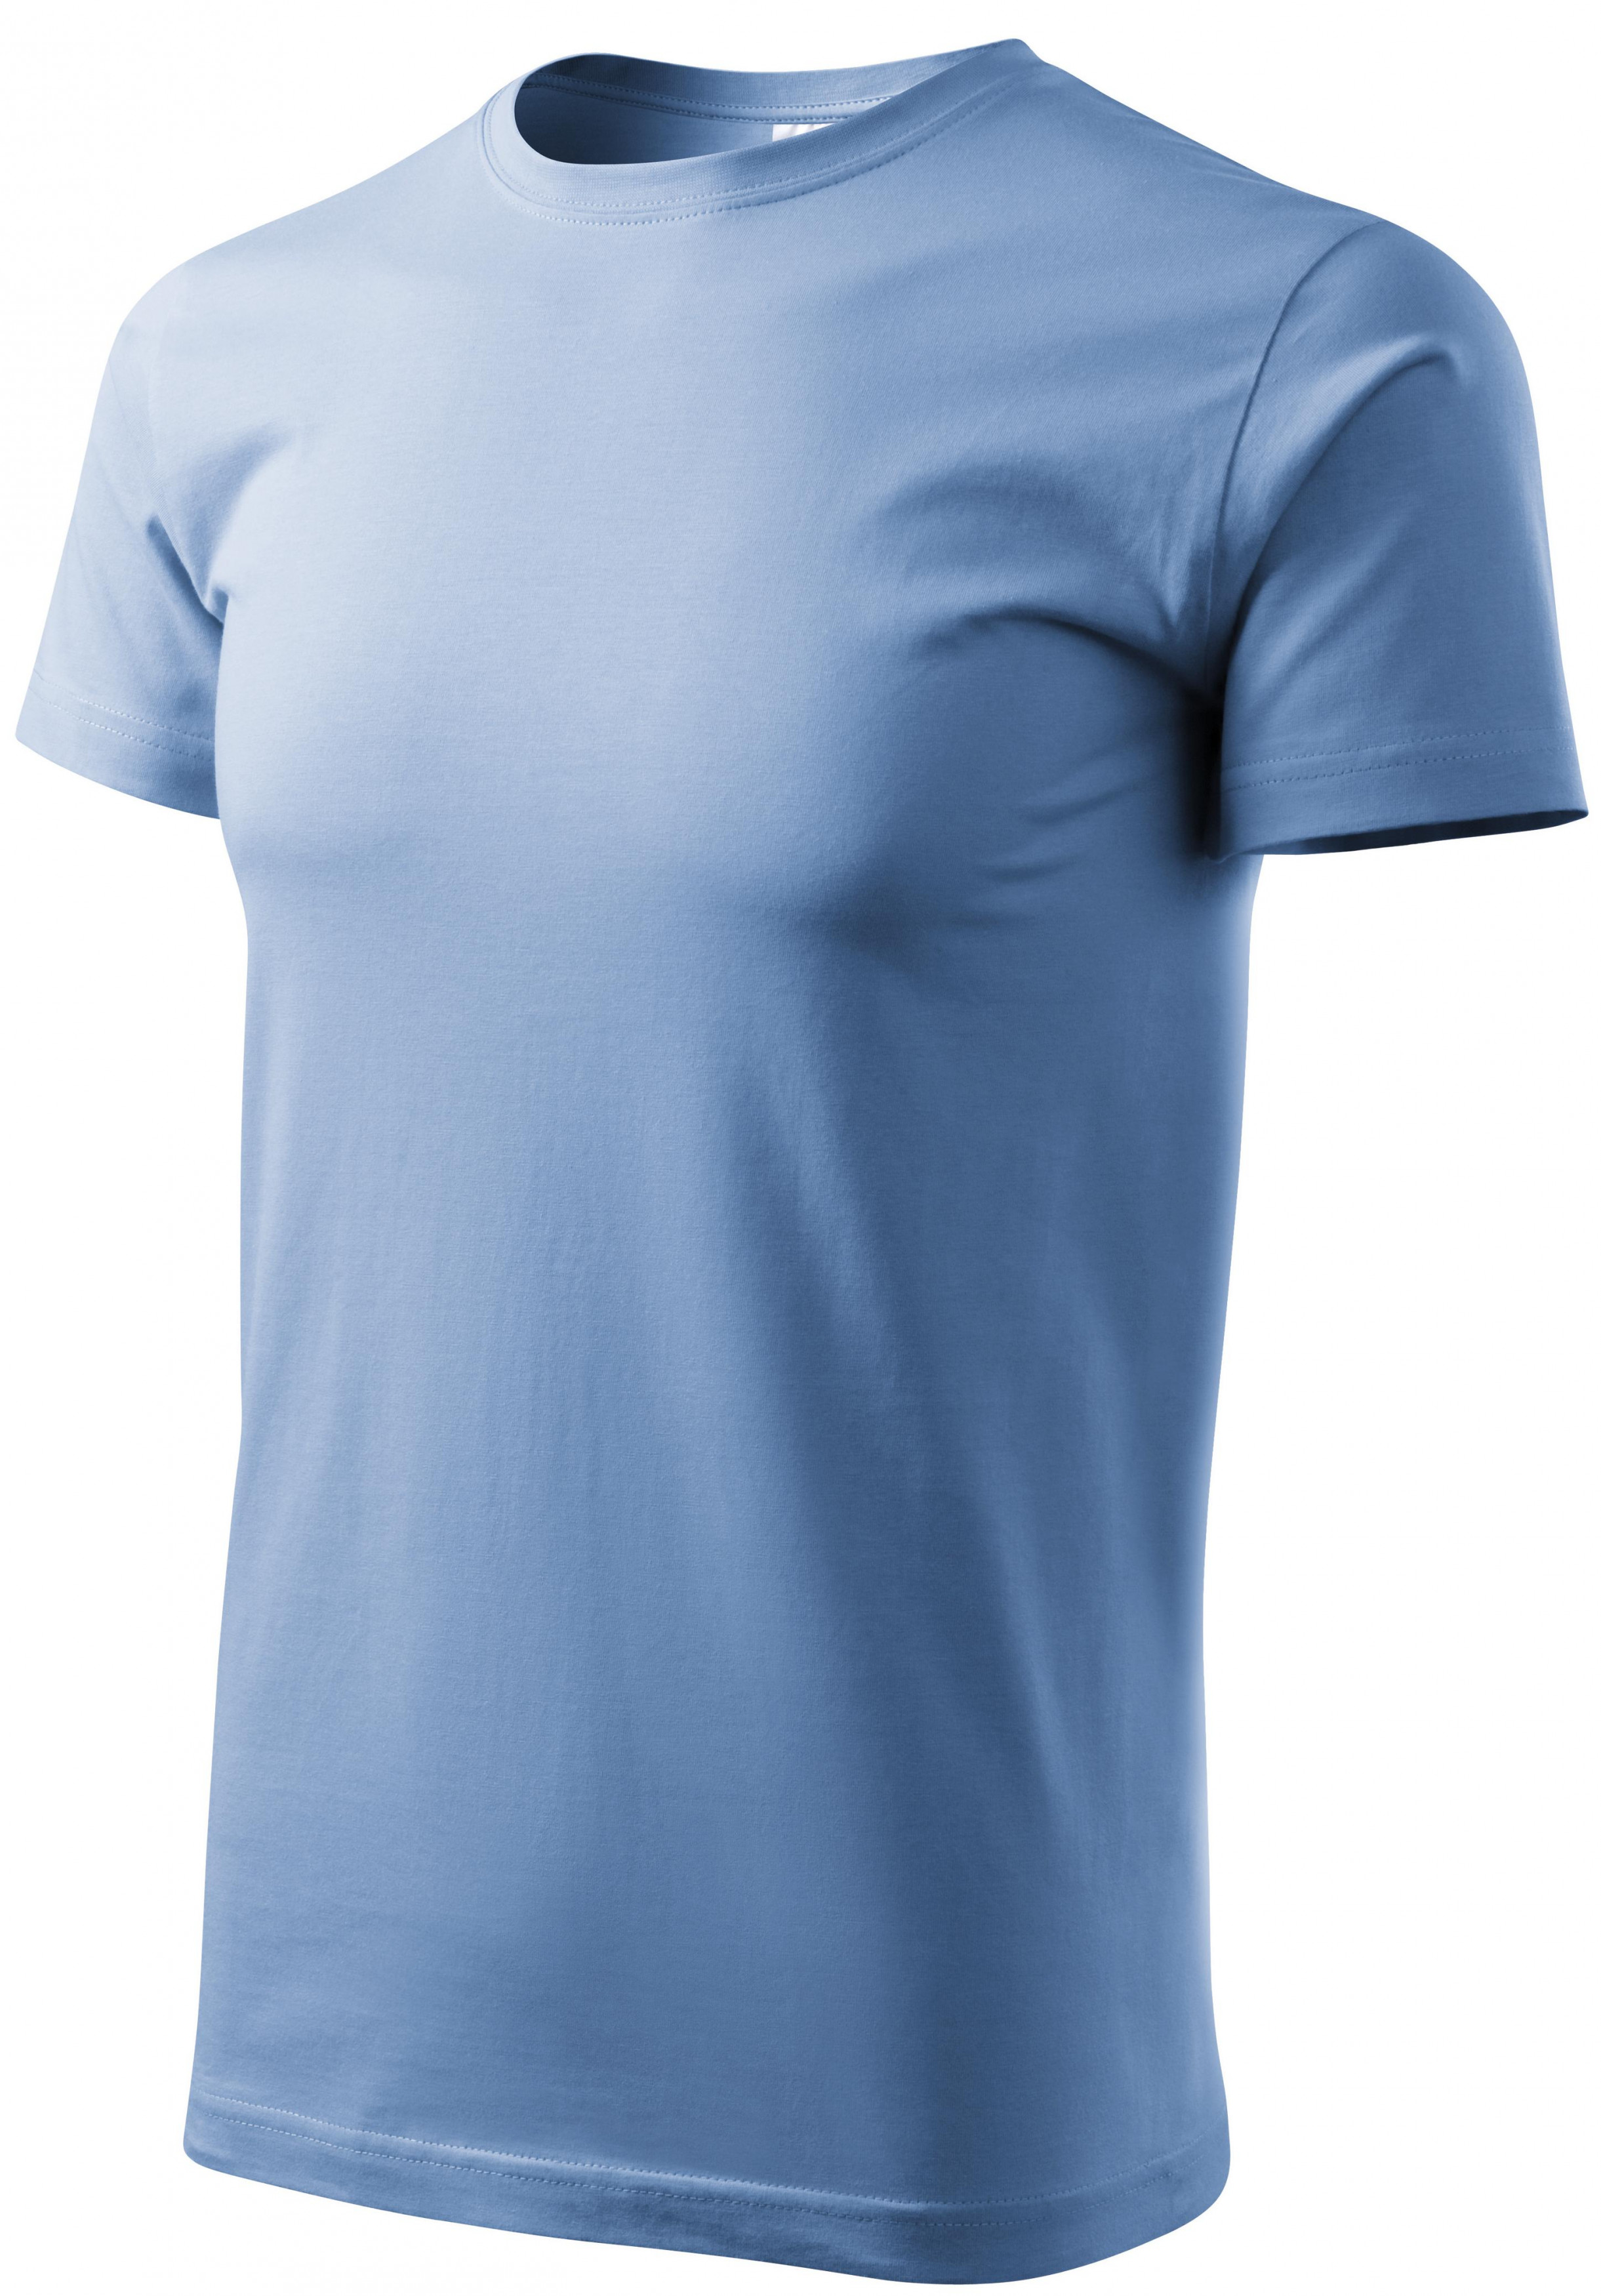 Tričko vyššej gramáže unisex, nebeská modrá, XL